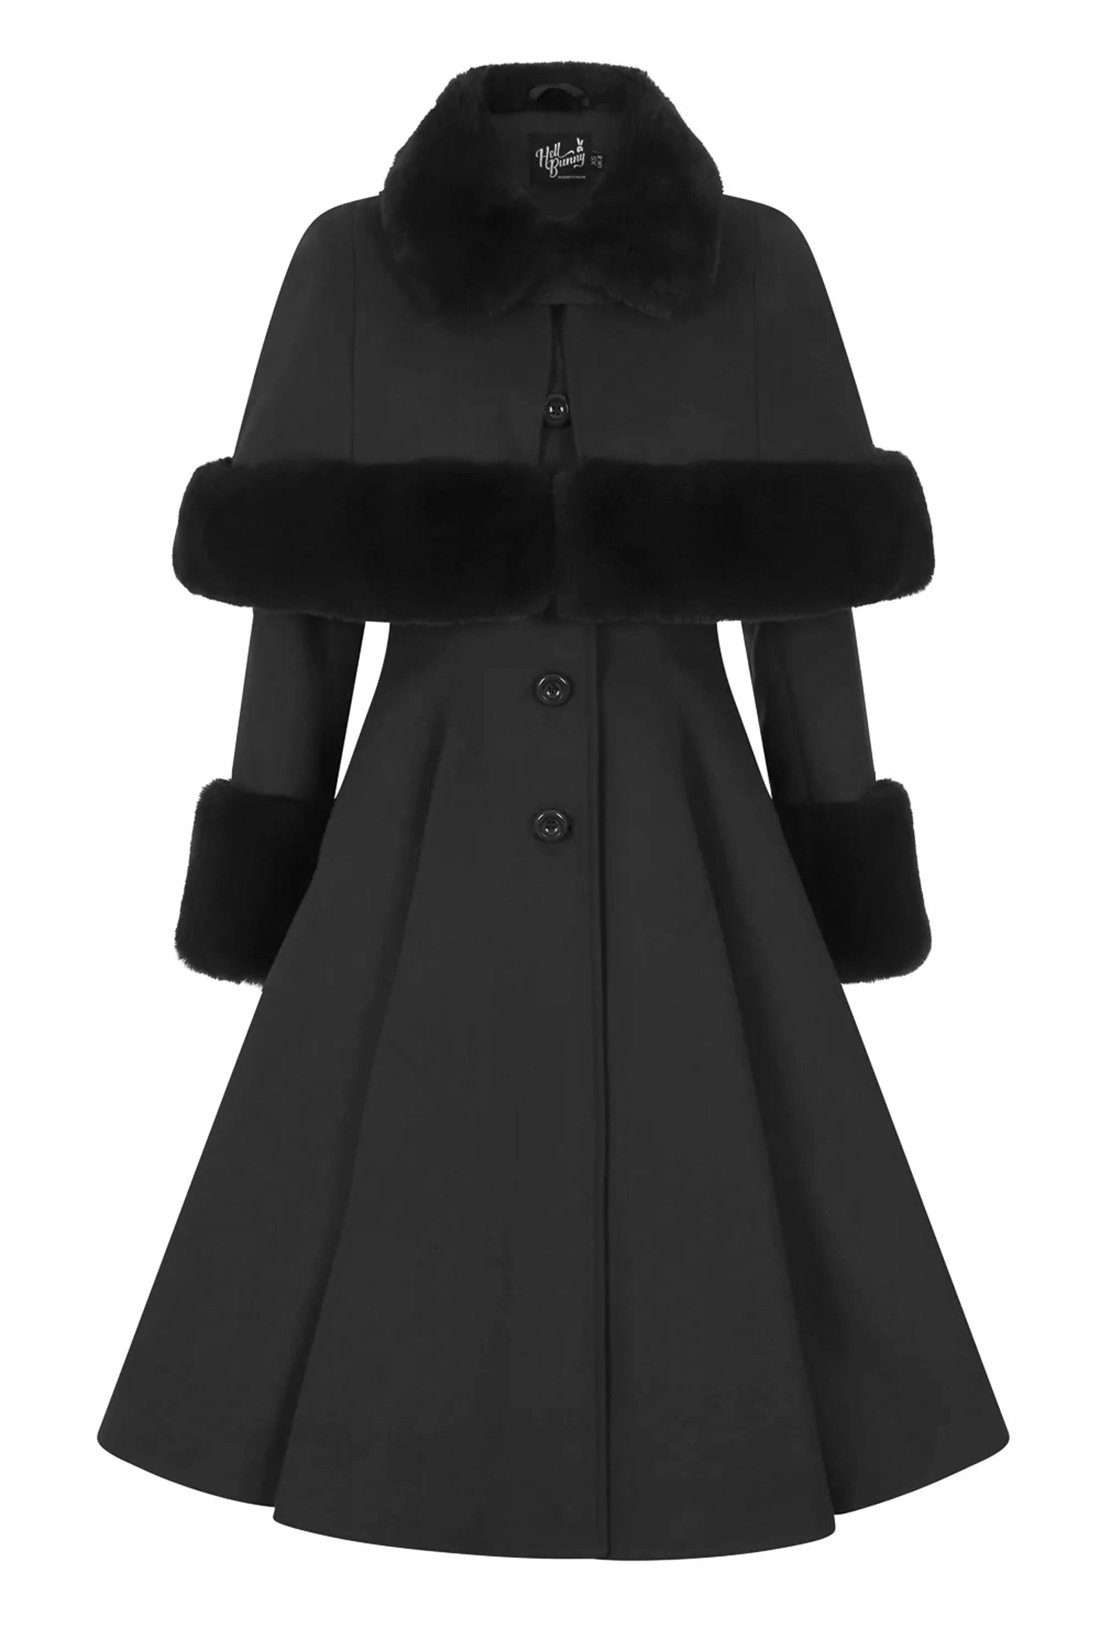 Зимнее пальто Капулетти, черное искусственное меховое ретро-винтажное зимнее пальто, пушистое